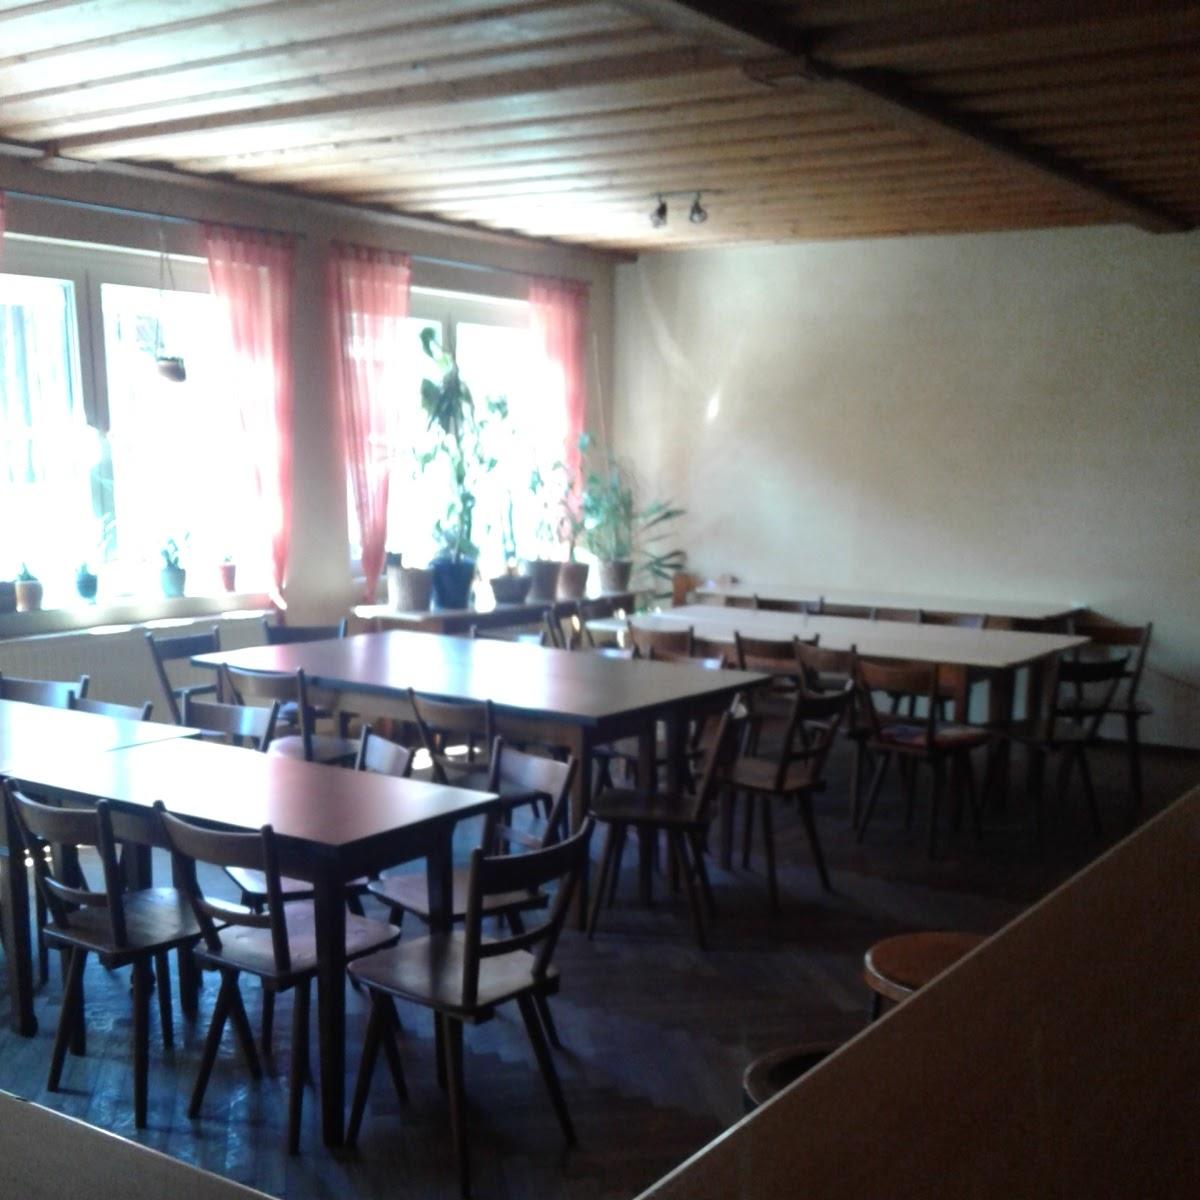 Restaurant "Musikkneipe Zappa" in Freystadt